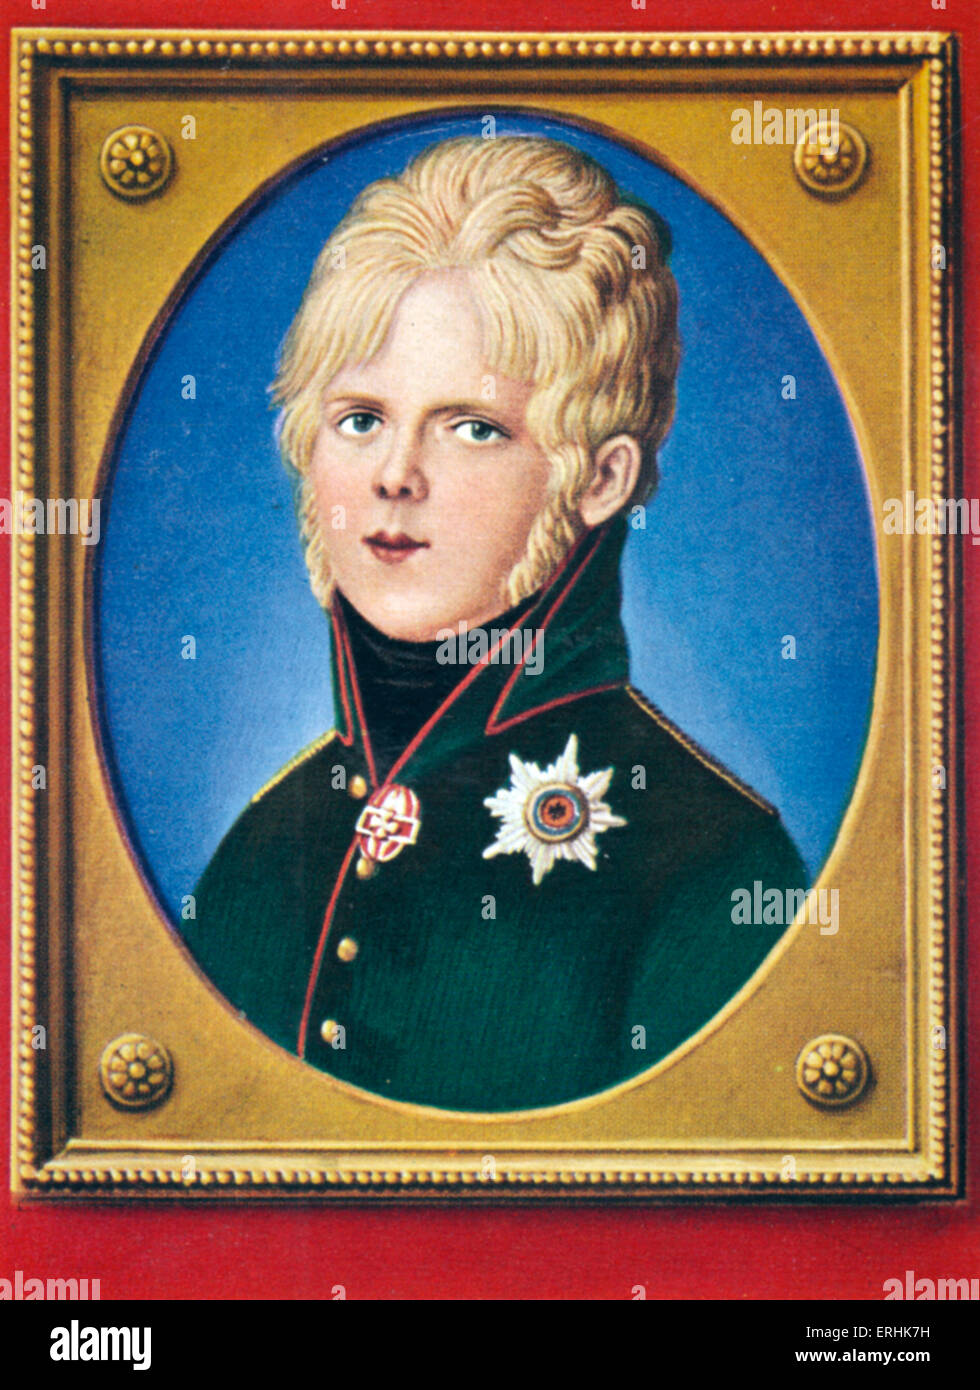 William I (Wilhelm I). Porträt der deutschen Kaiser und König von Preußen als junger Prinz. Nach einer Miniatur von 1815. 22. März 1797 – 9. März 1888 Stockfoto